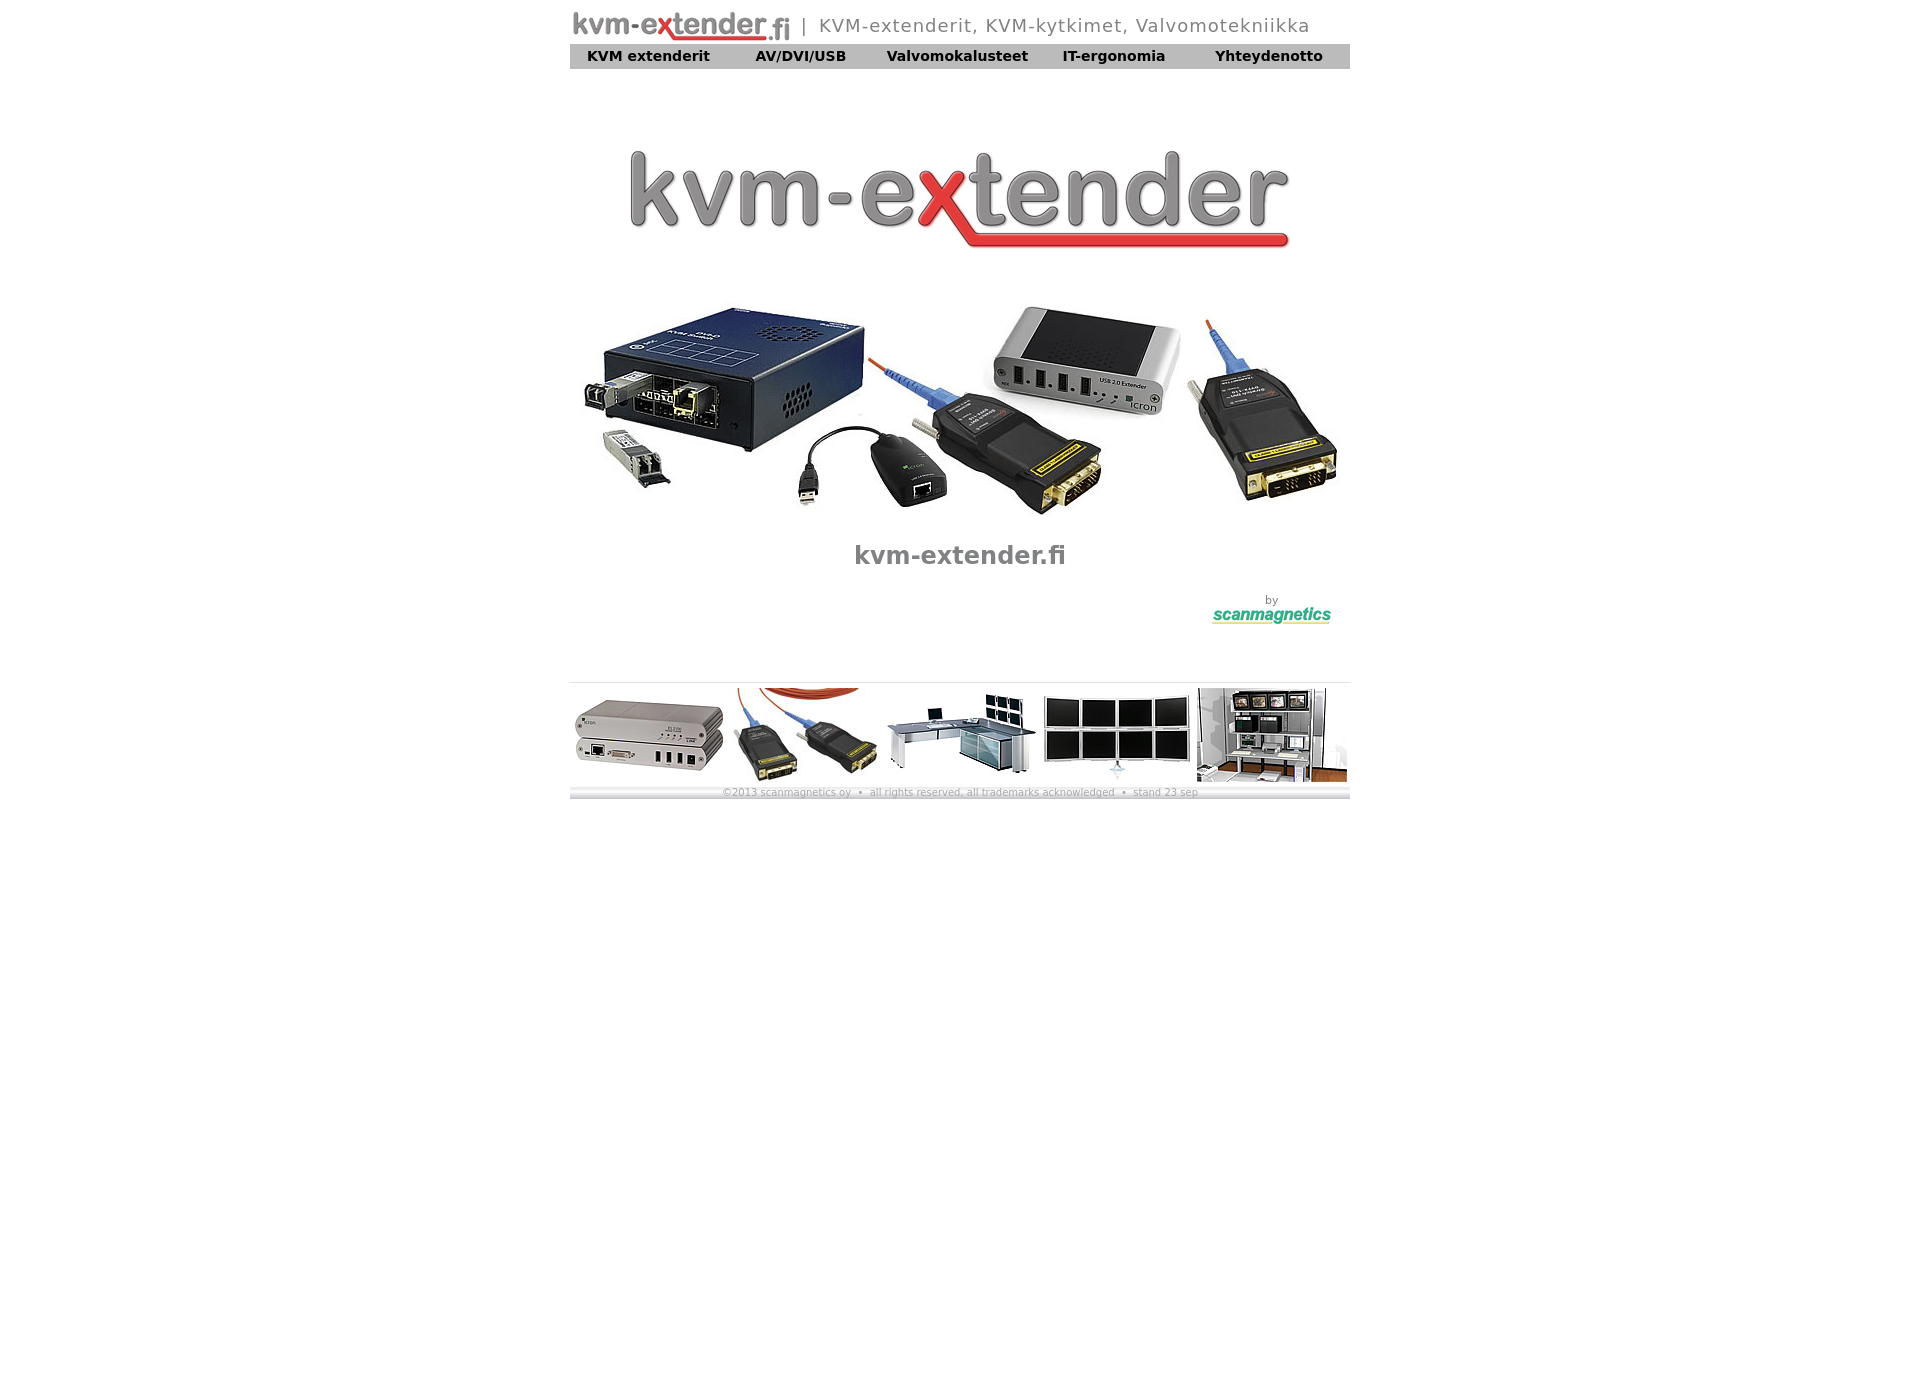 Näyttökuva kvm-extender.fi